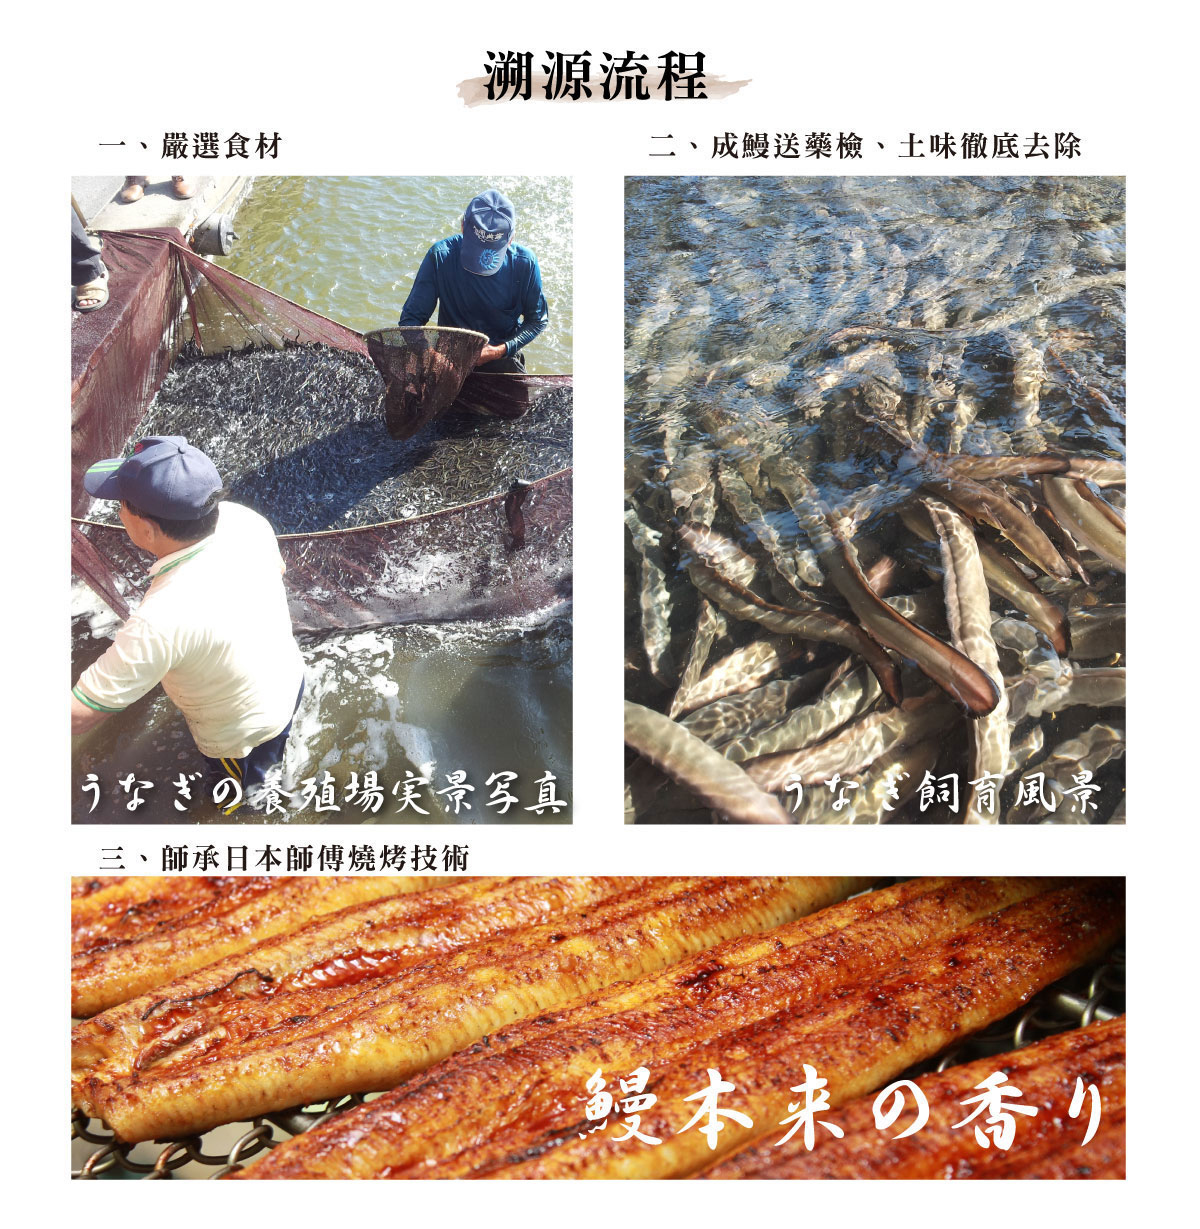 【屏榮坊】日本等級蒲燒鰻魚(400g/包) 蒲燒鰻 鰻魚 蒲燒鰻魚 鰻魚片